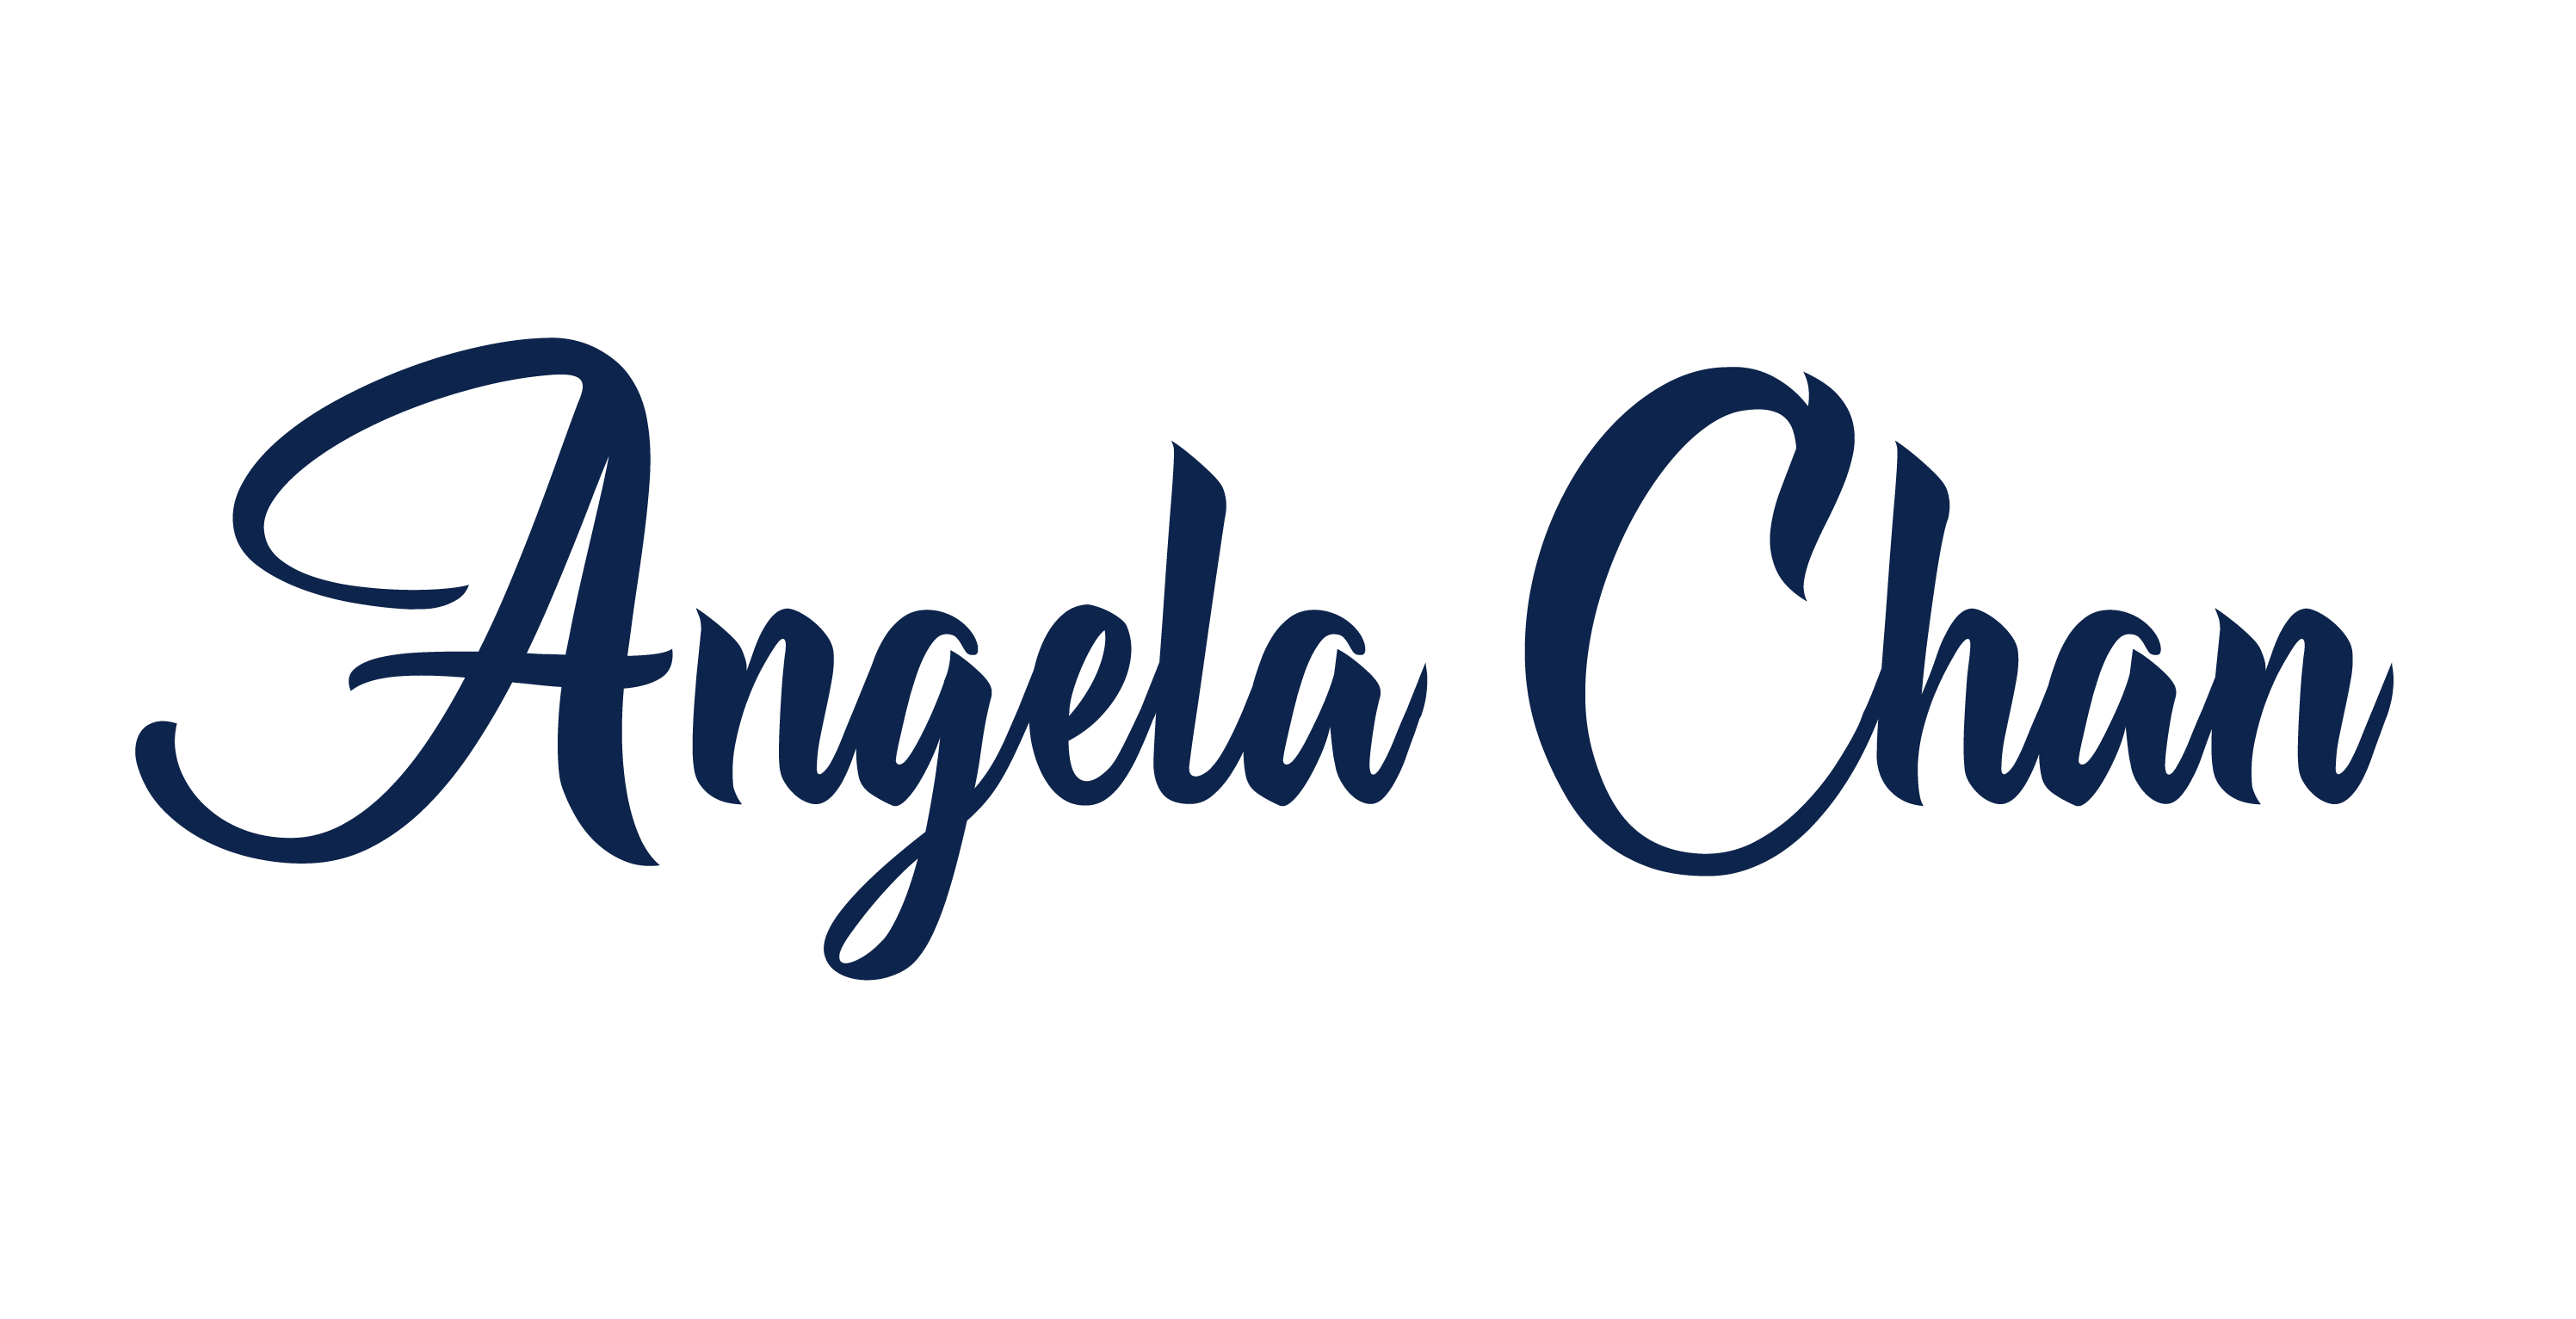 Angela Chan – Author, Photographer, & Producer